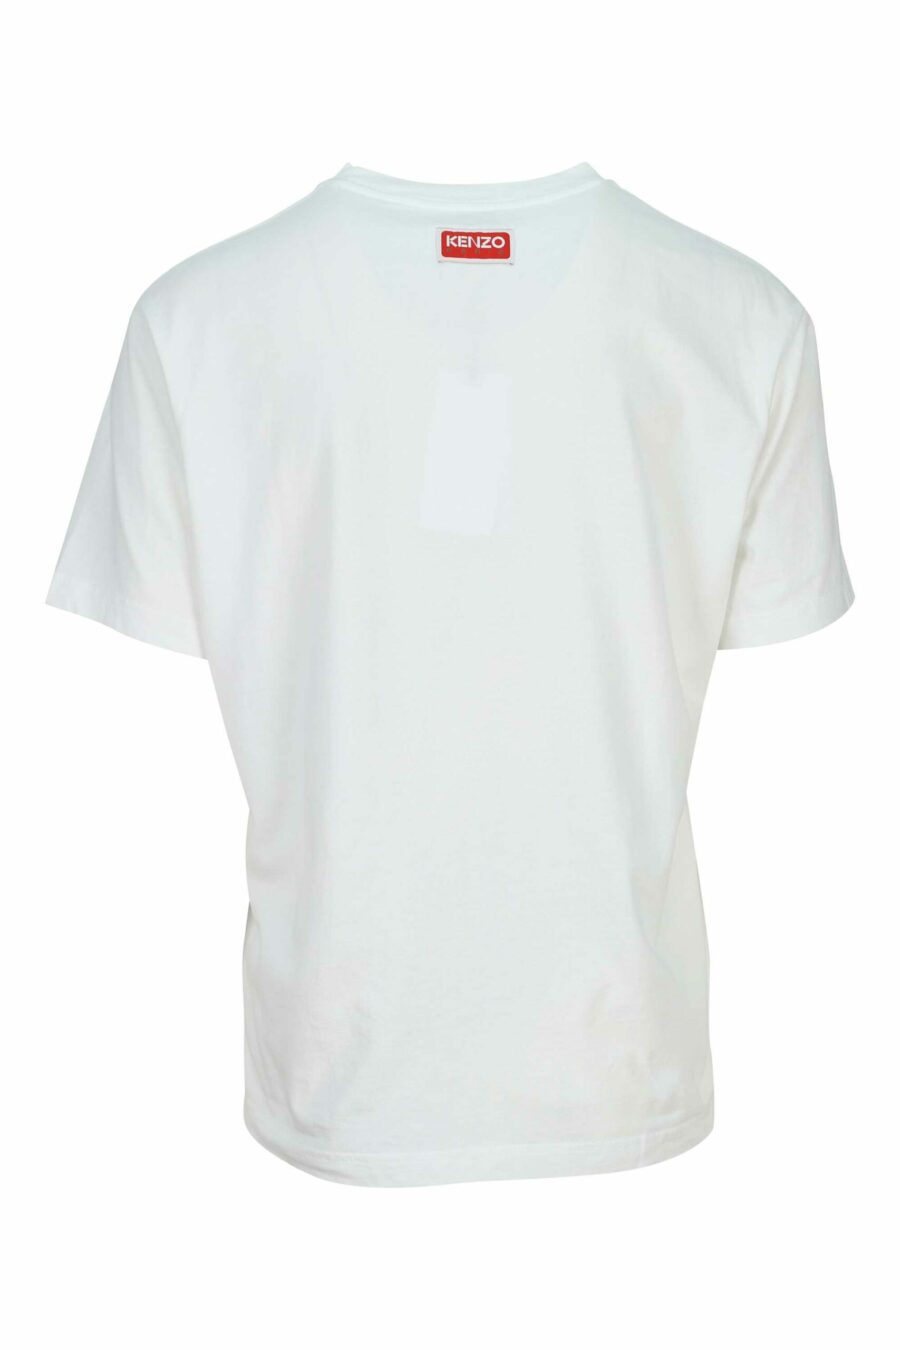 T-shirt blanc surdimensionné avec maxilogo tigre - 3612230627758 1 scaled